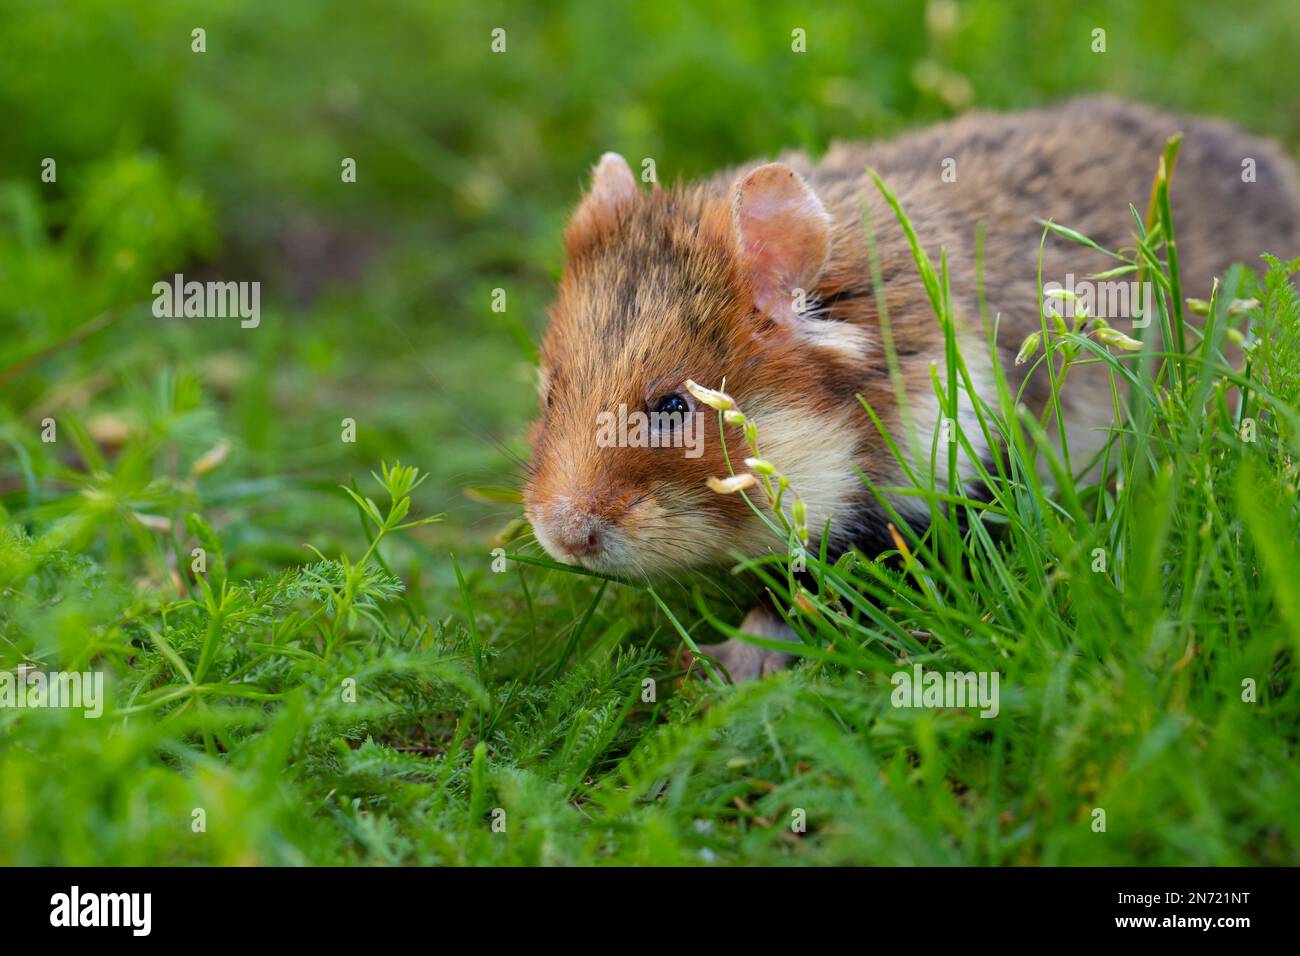 Hamster de campagne, Cricetus cricetus, hamster européen, prairie Banque D'Images